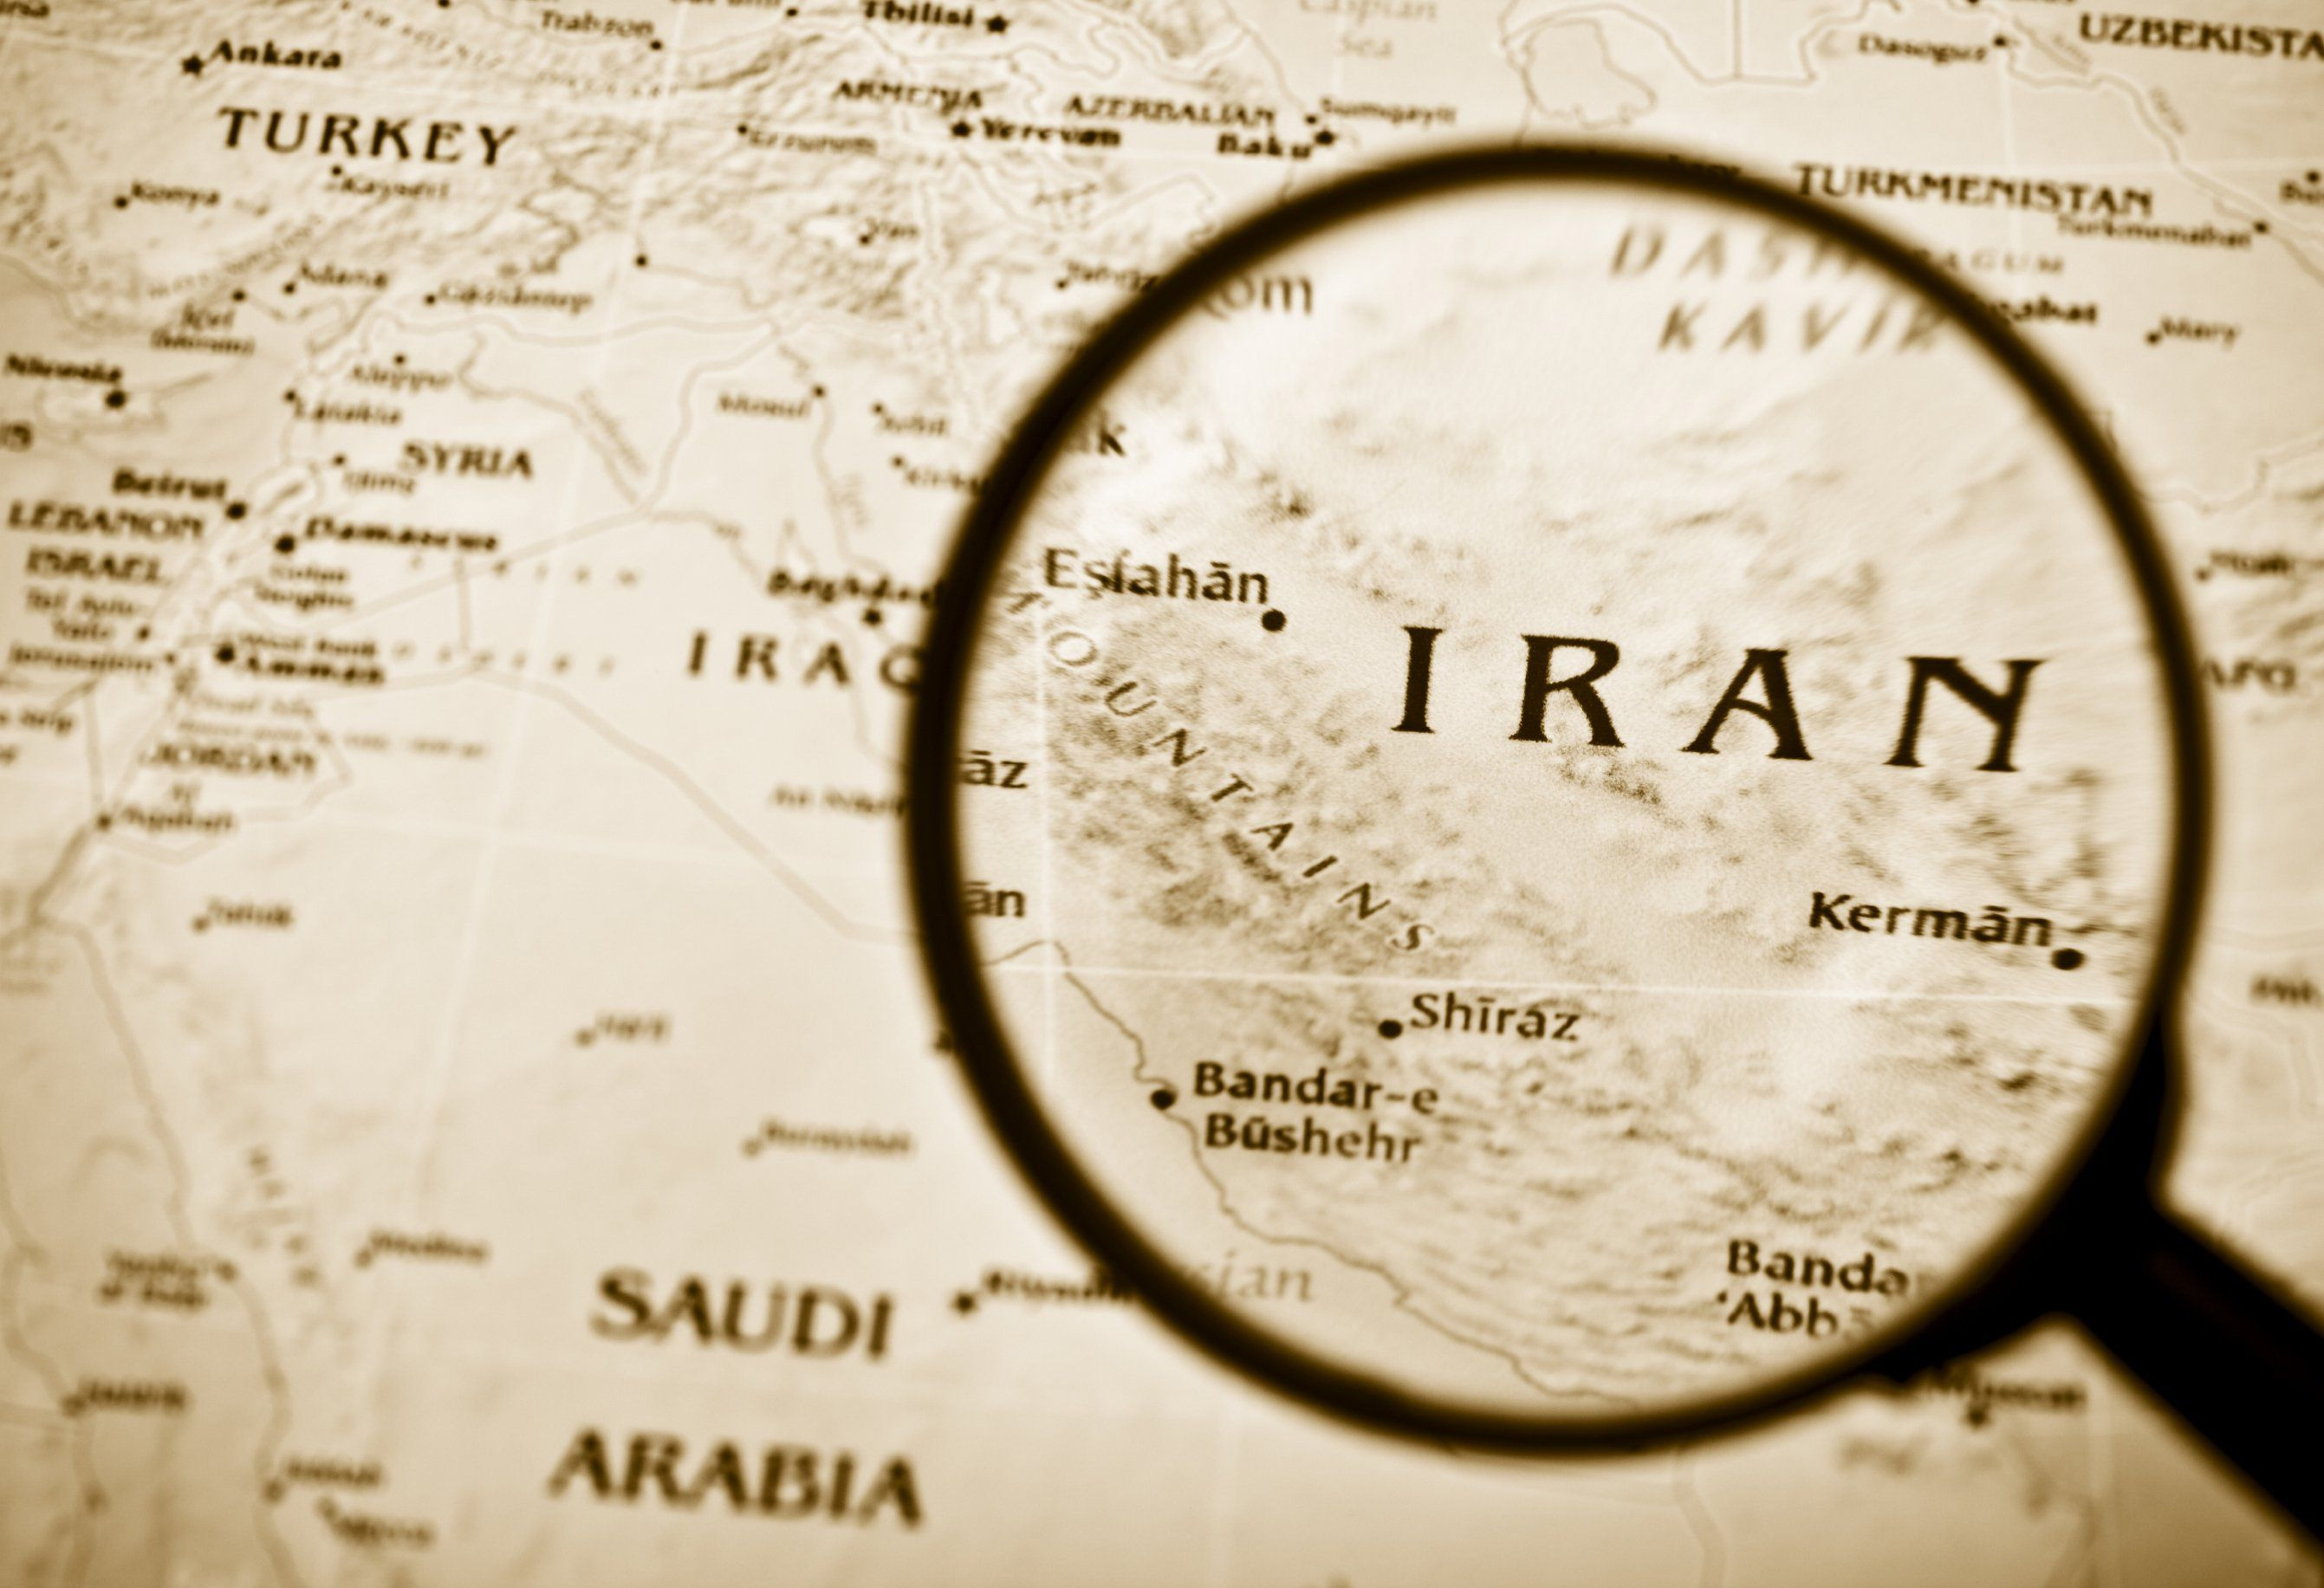 14 شخص و 17 نهاد در ارتباط با ایران، در فهرست جدید تحریم های آمریکا